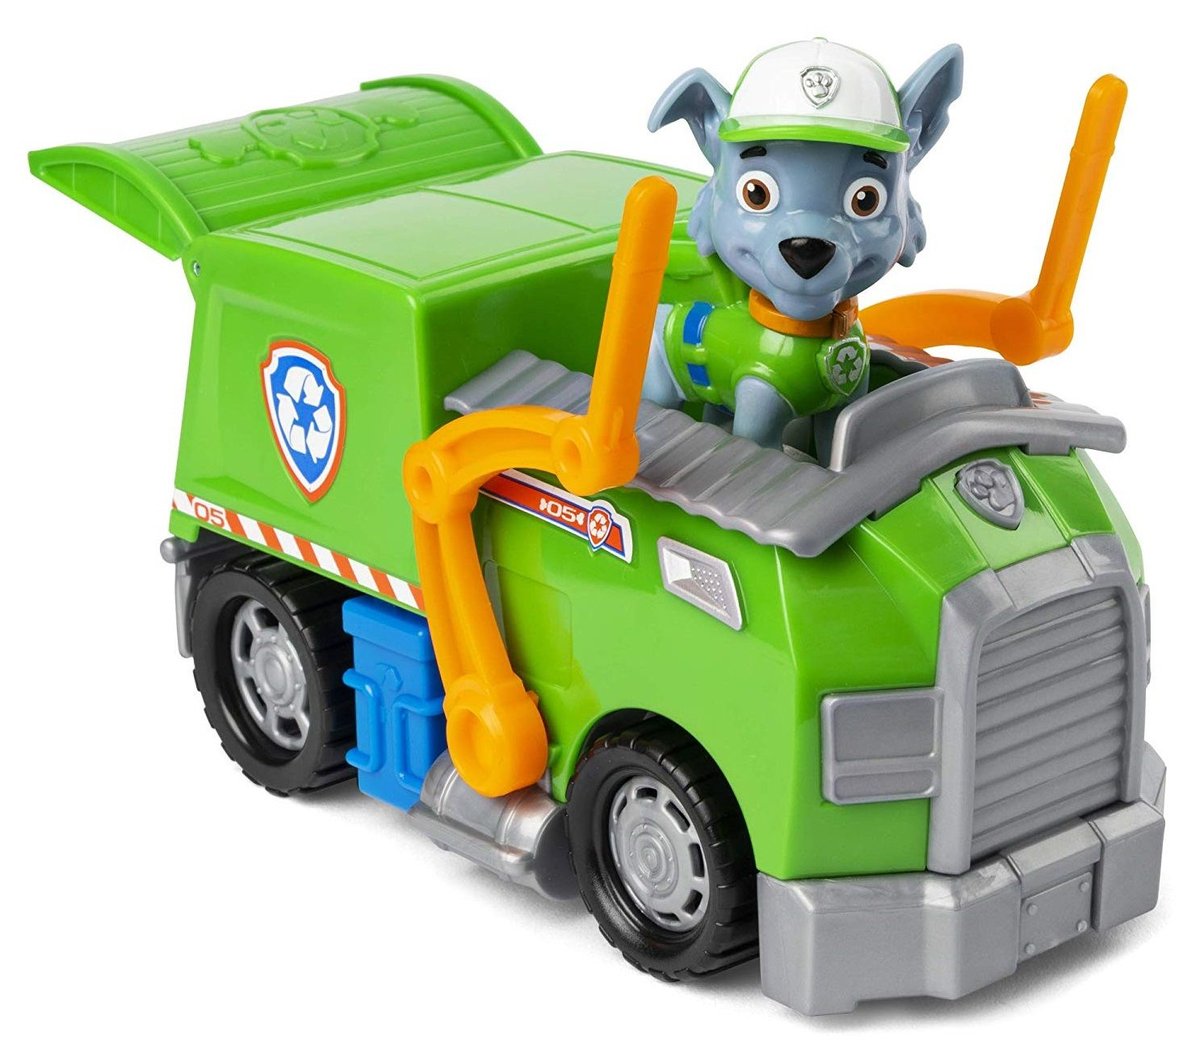 Spin Master Basic Vehicle - Rocky, Toy vehicle